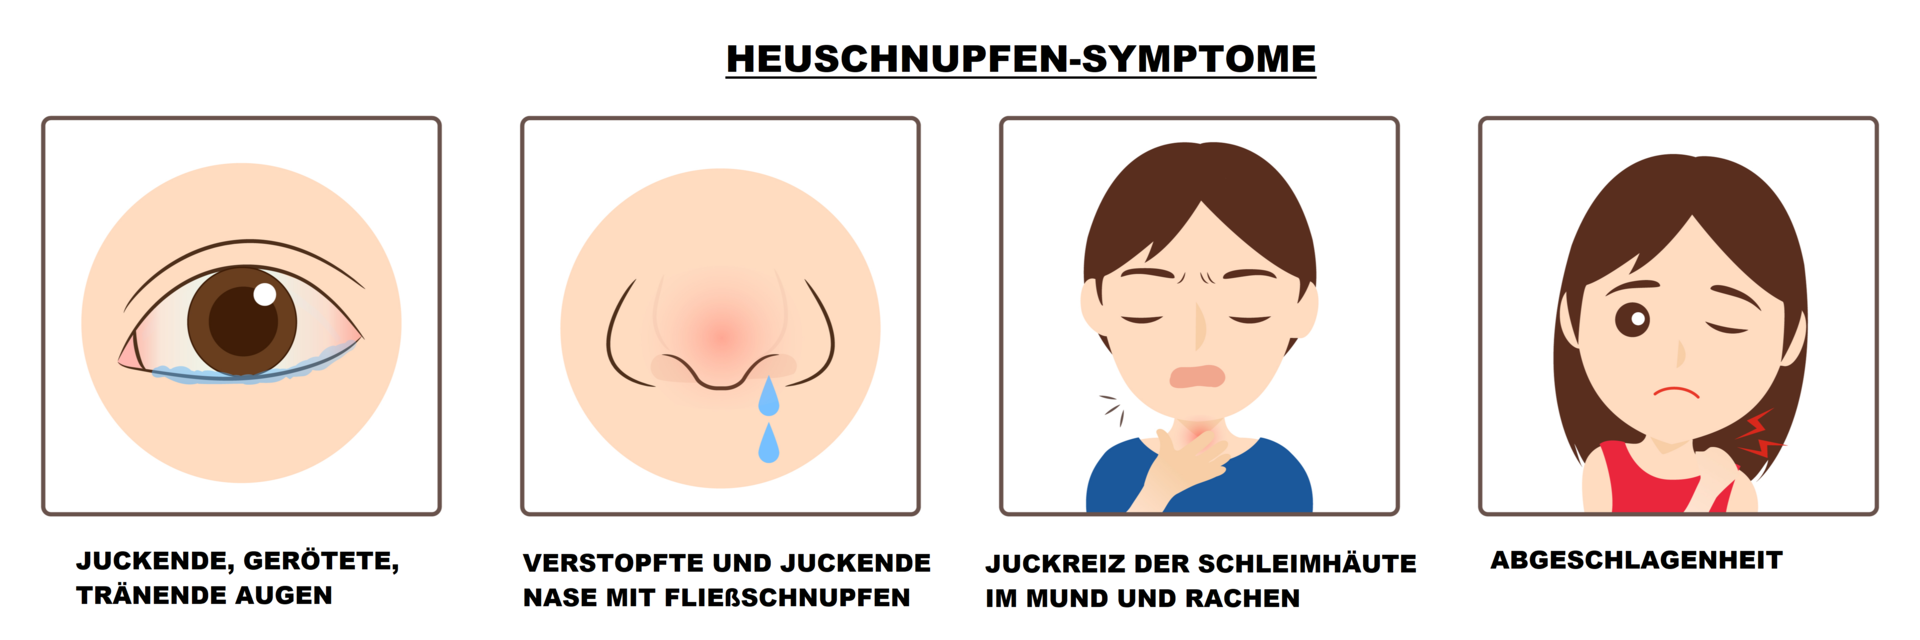 Symptome bei Heuschnupfen